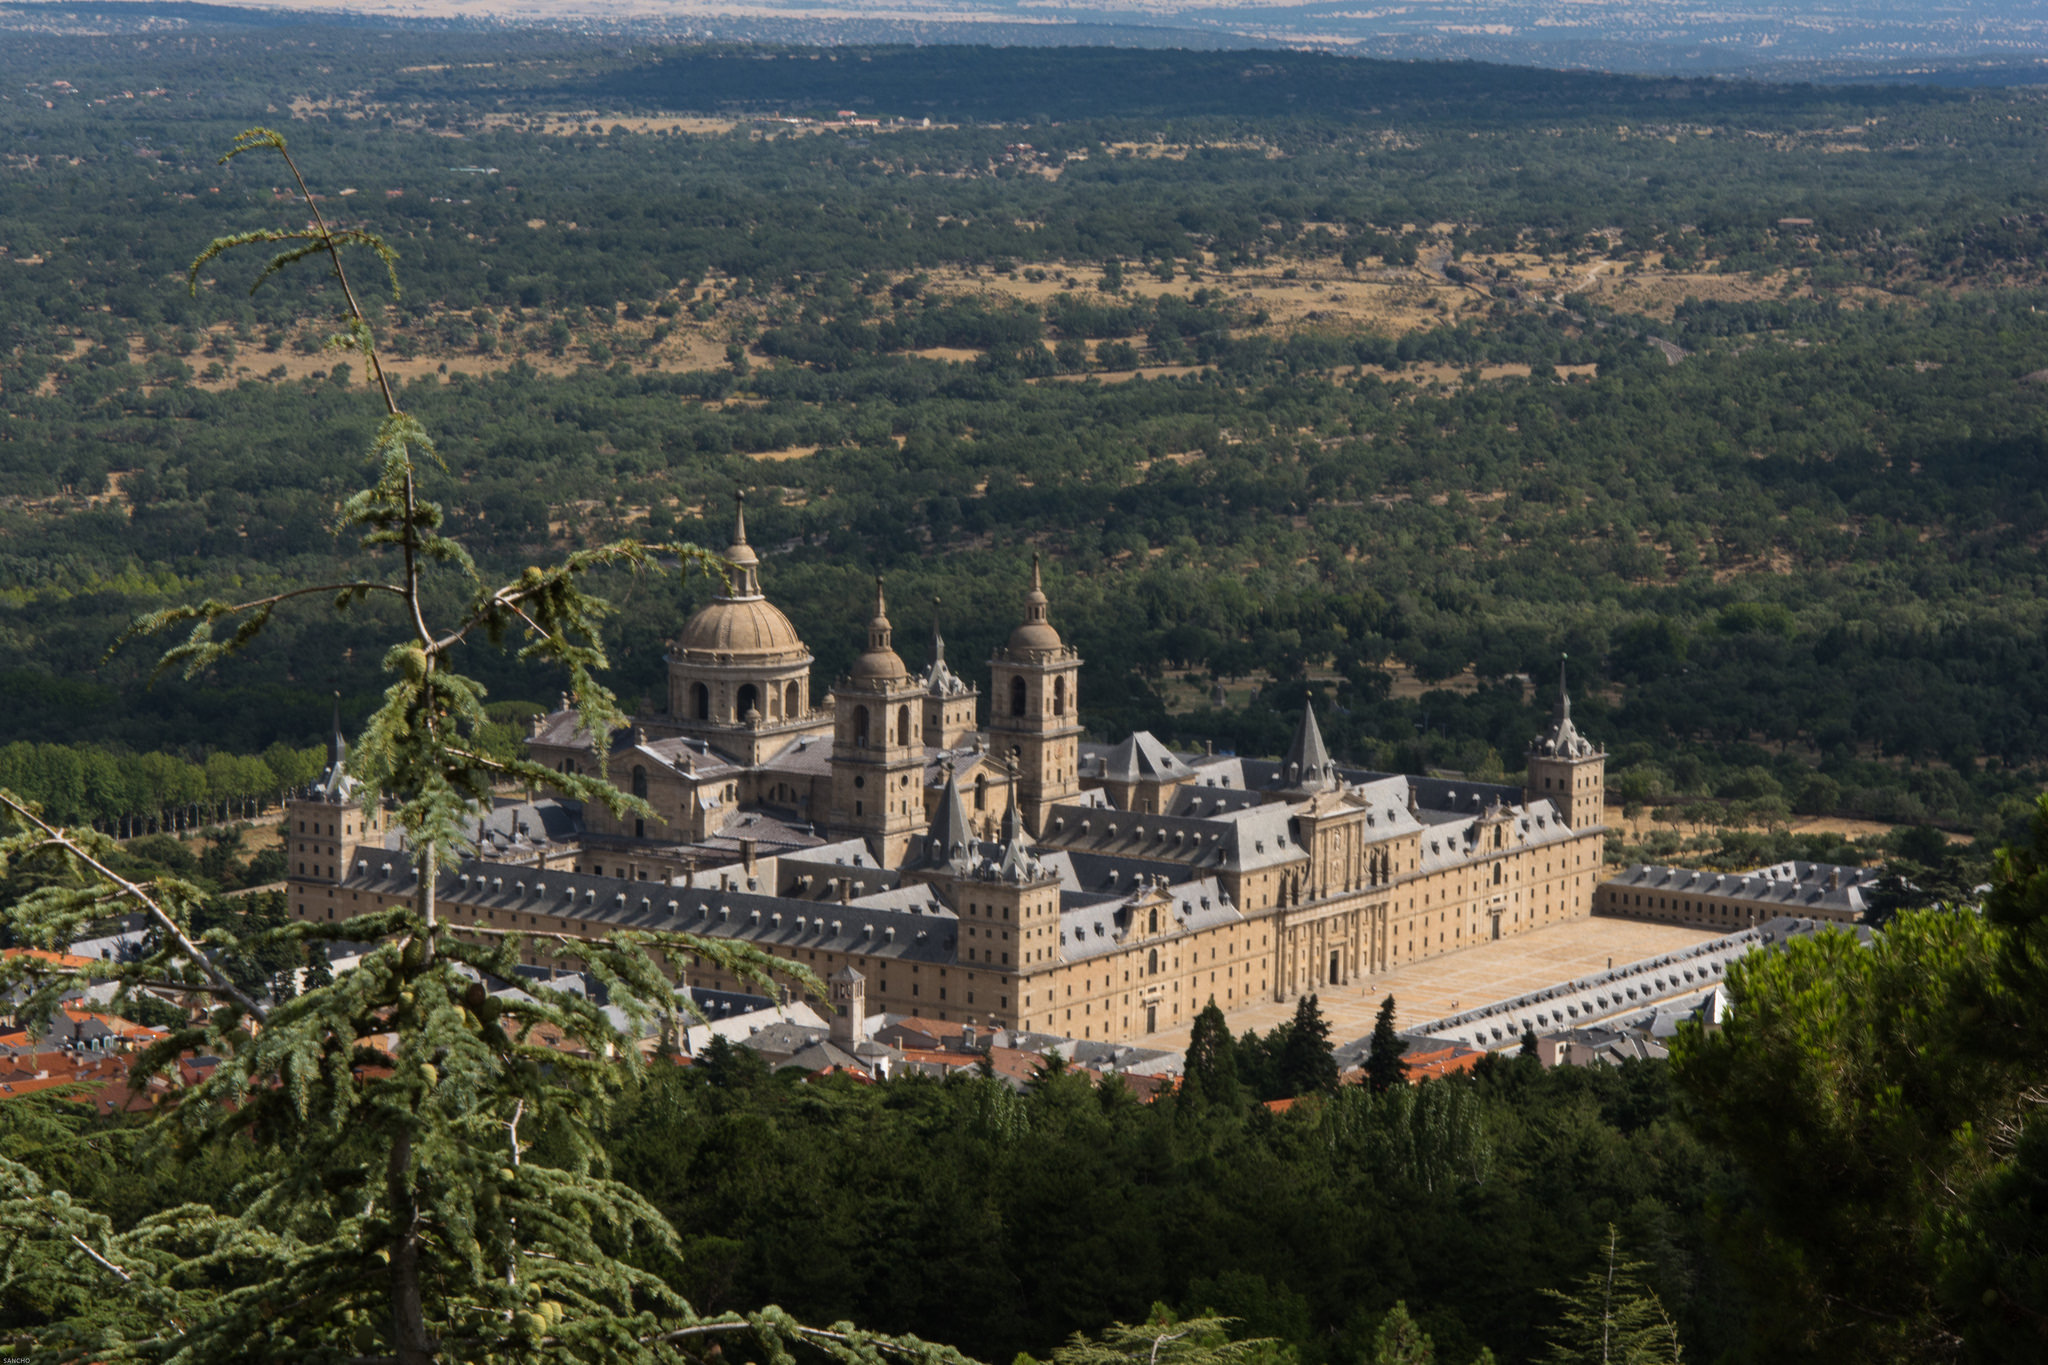 Величественный дворцовый комплекс escorial - гордость испанцев